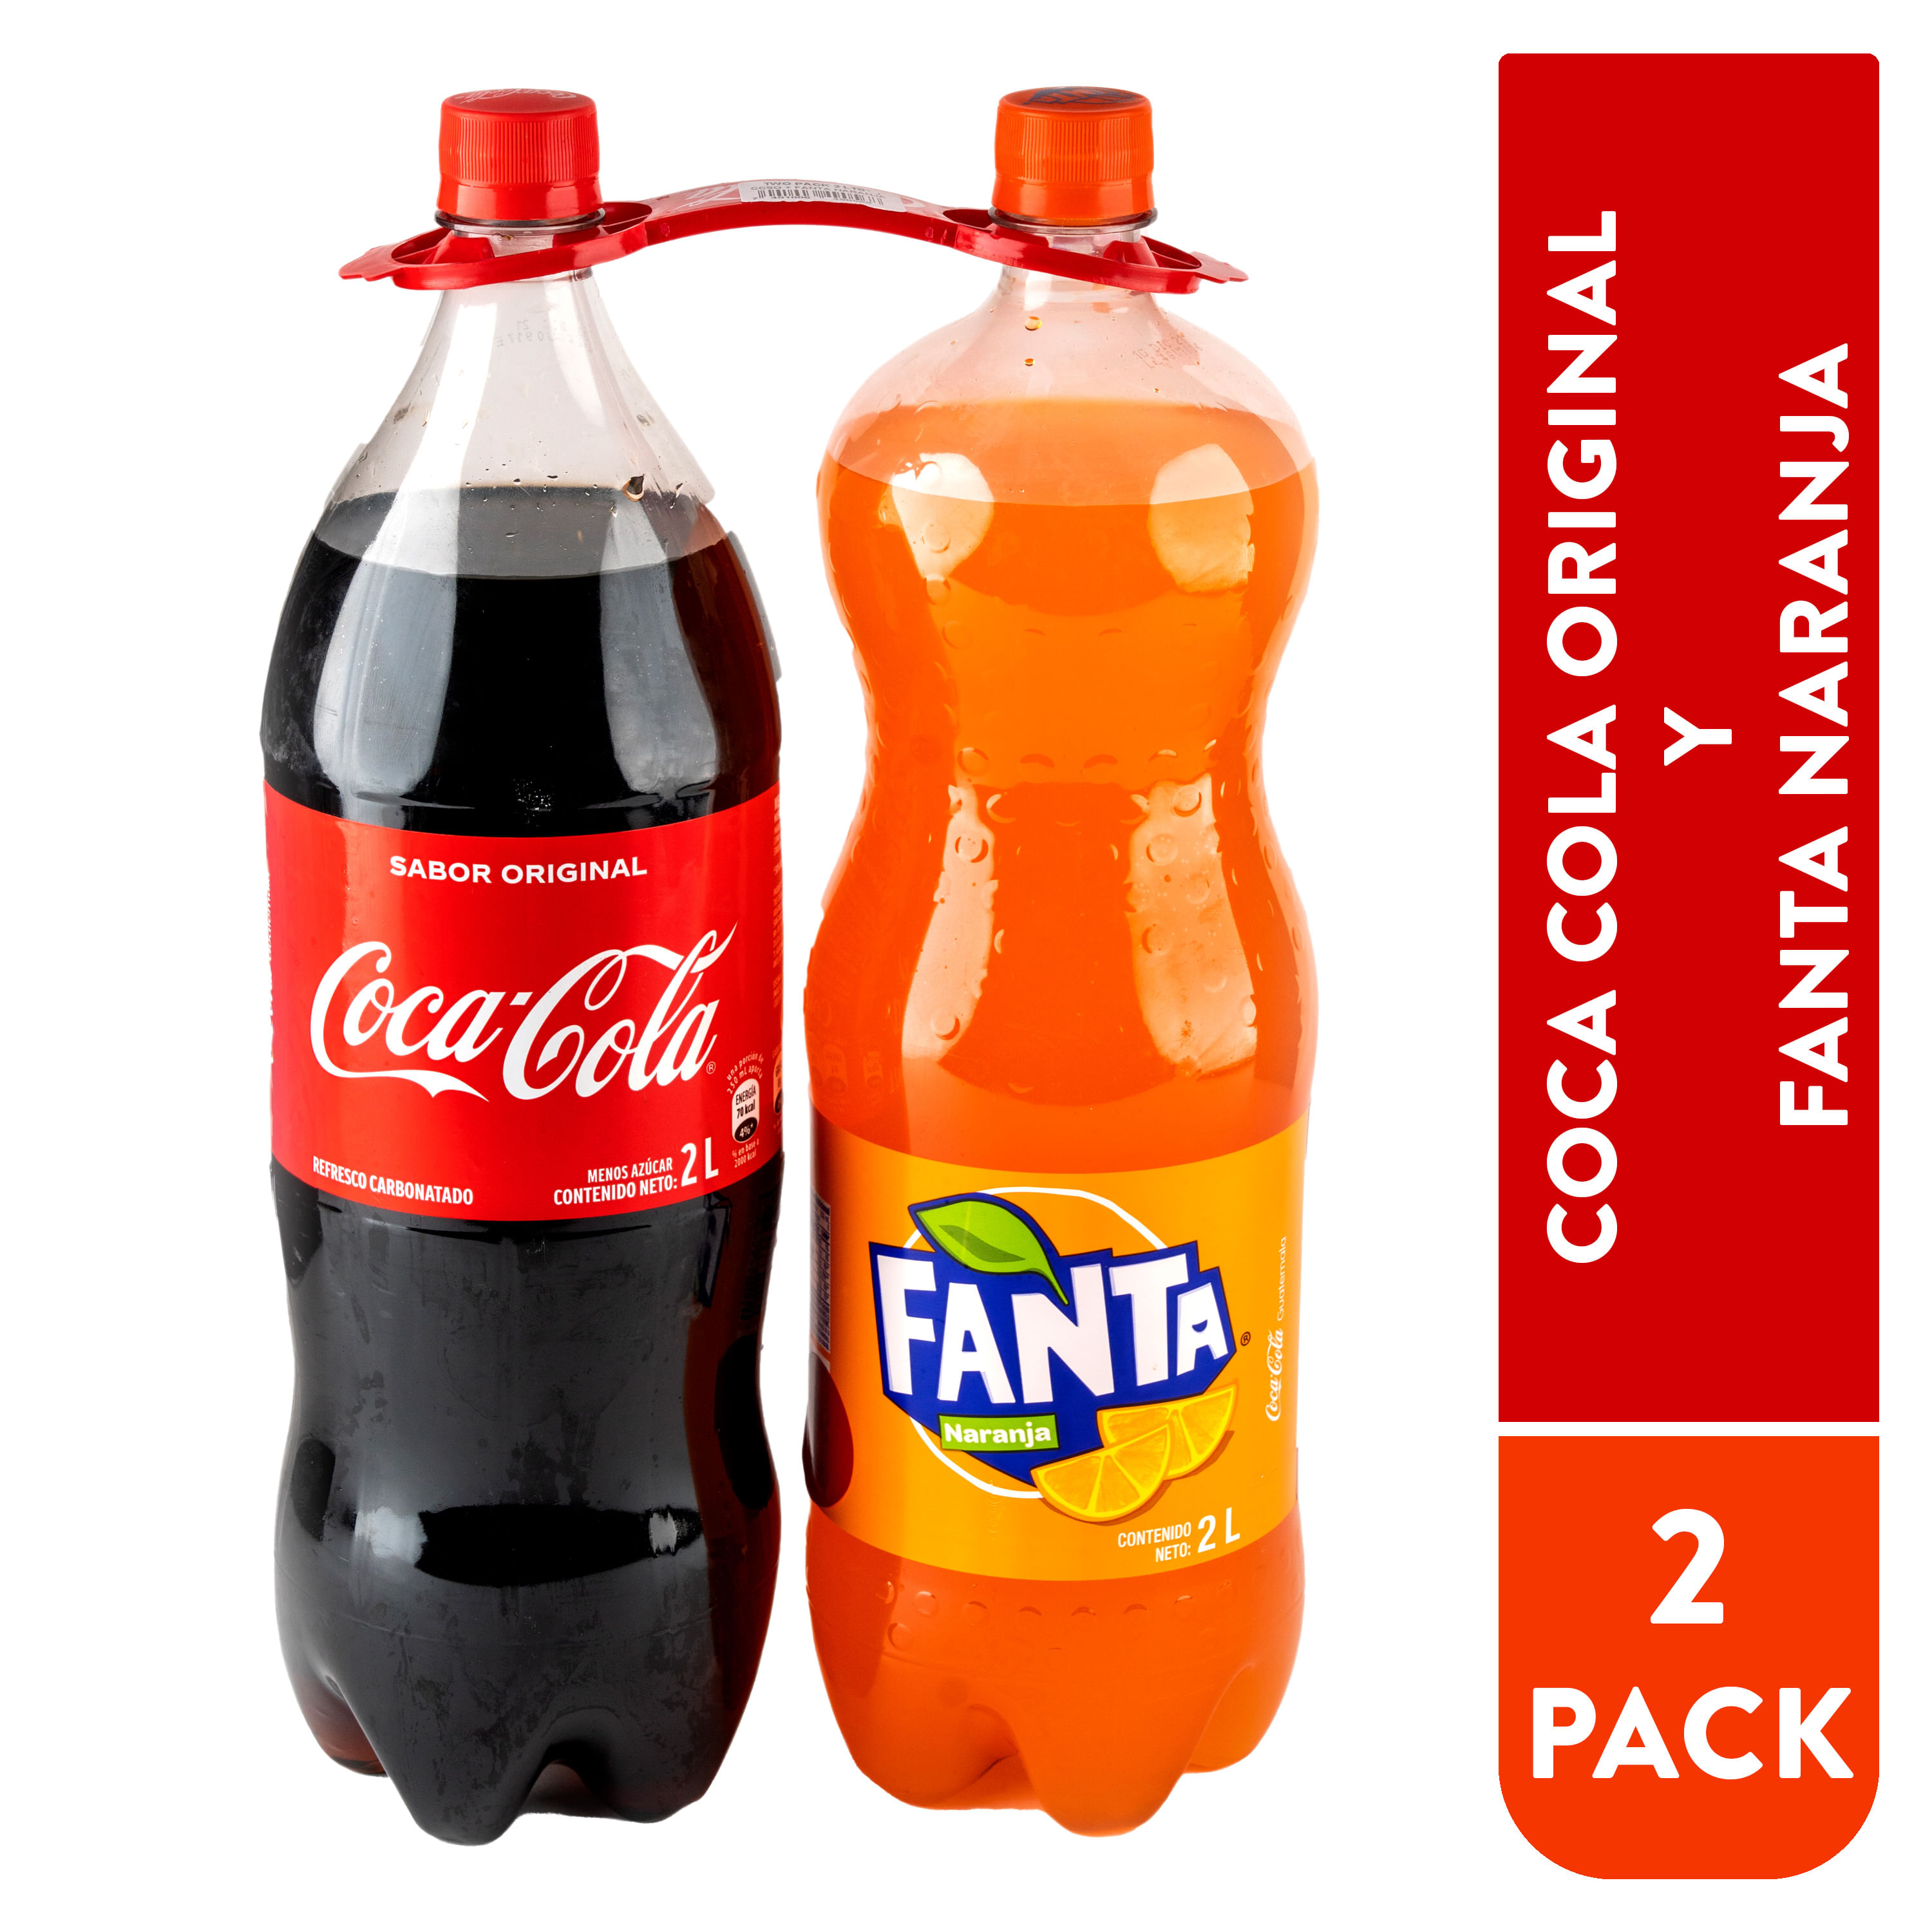 Comprar Gaseosa Coca Cola regular + Fanta naranja 2pack - 4 L, Walmart  Guatemala - Maxi Despensa